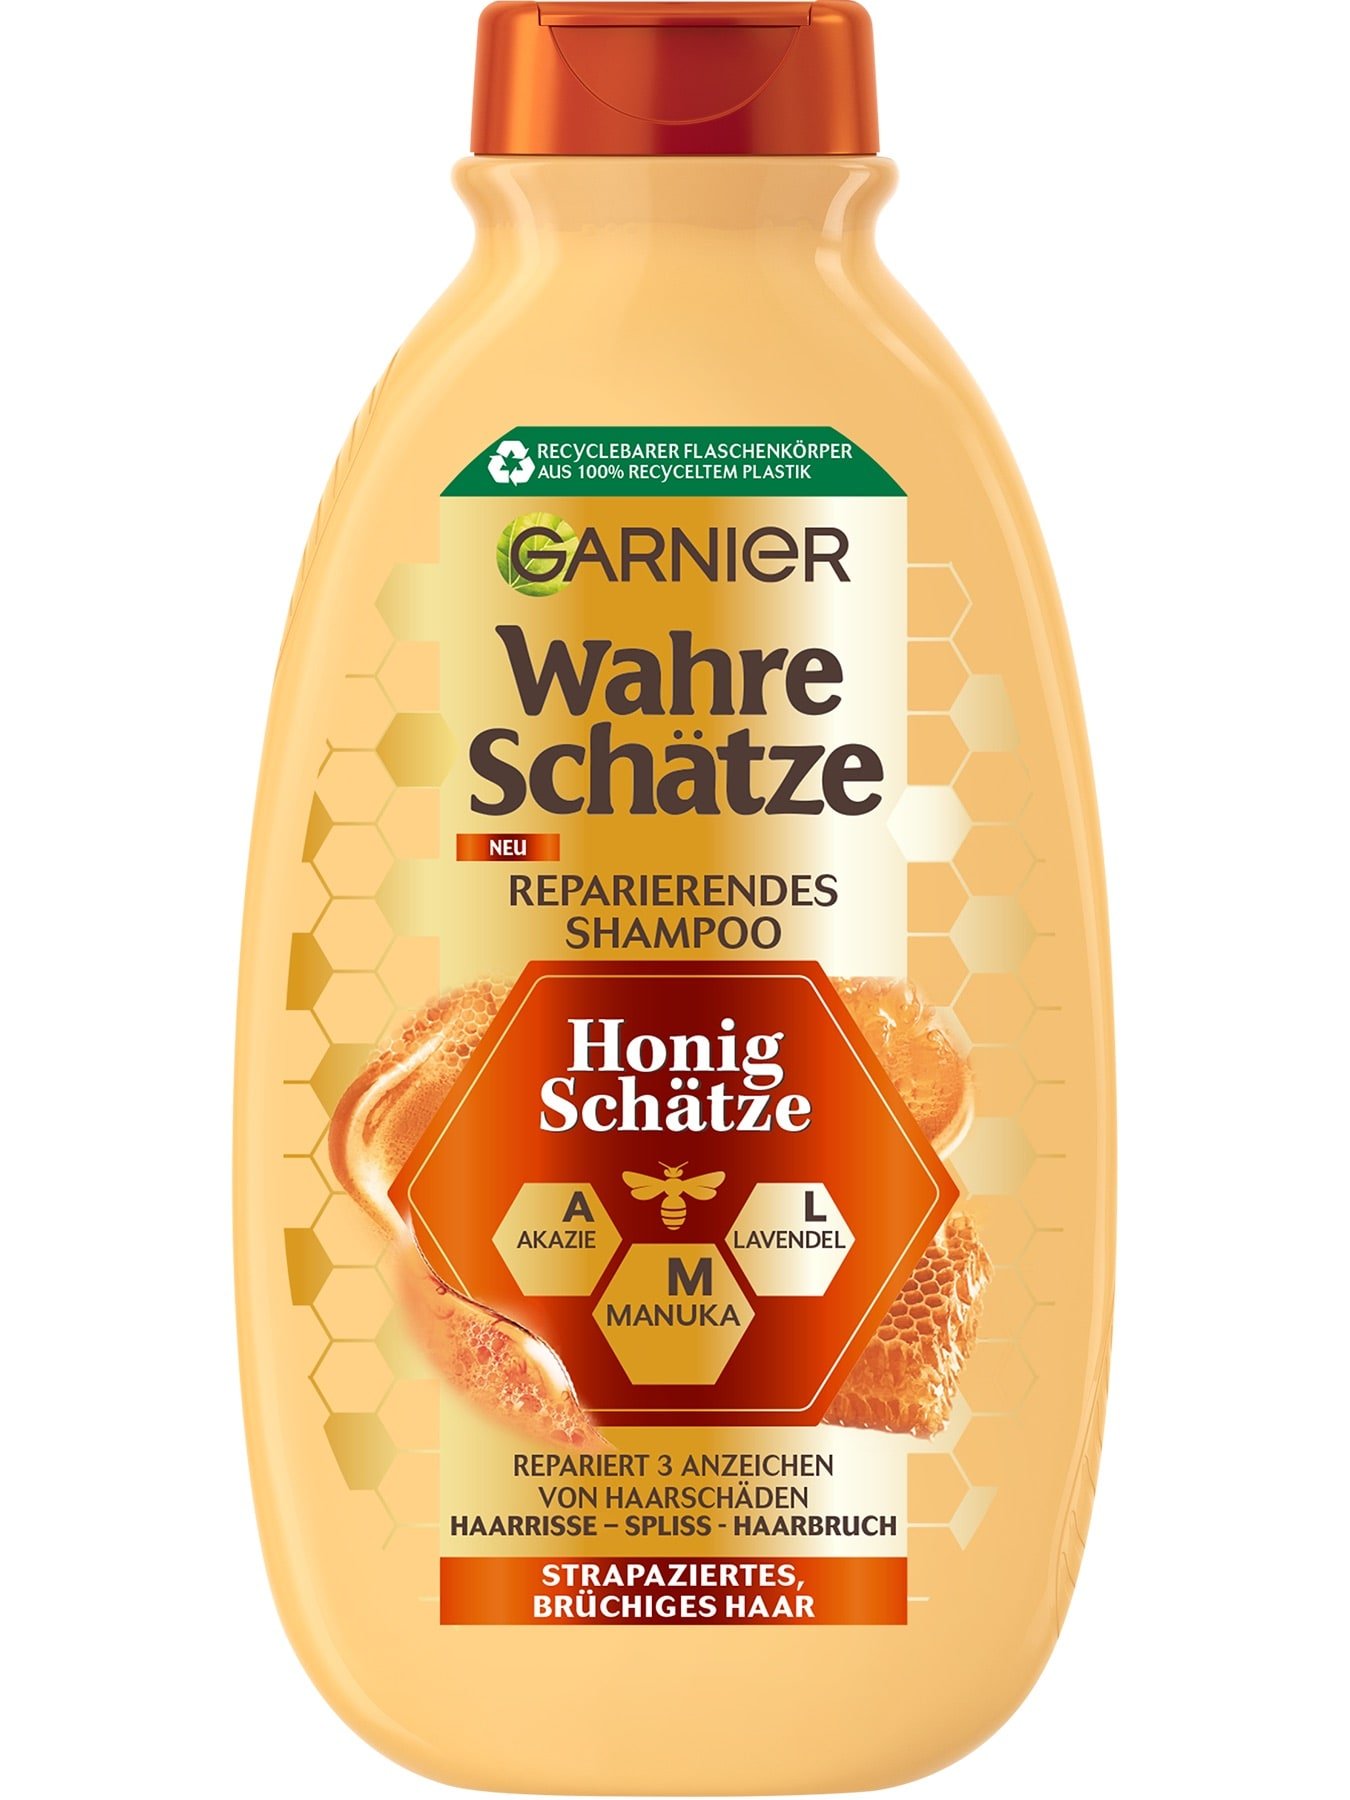 Wahre Schätze Reparierendes Shampoo Honig Schätze 300ml - Produktabbildung